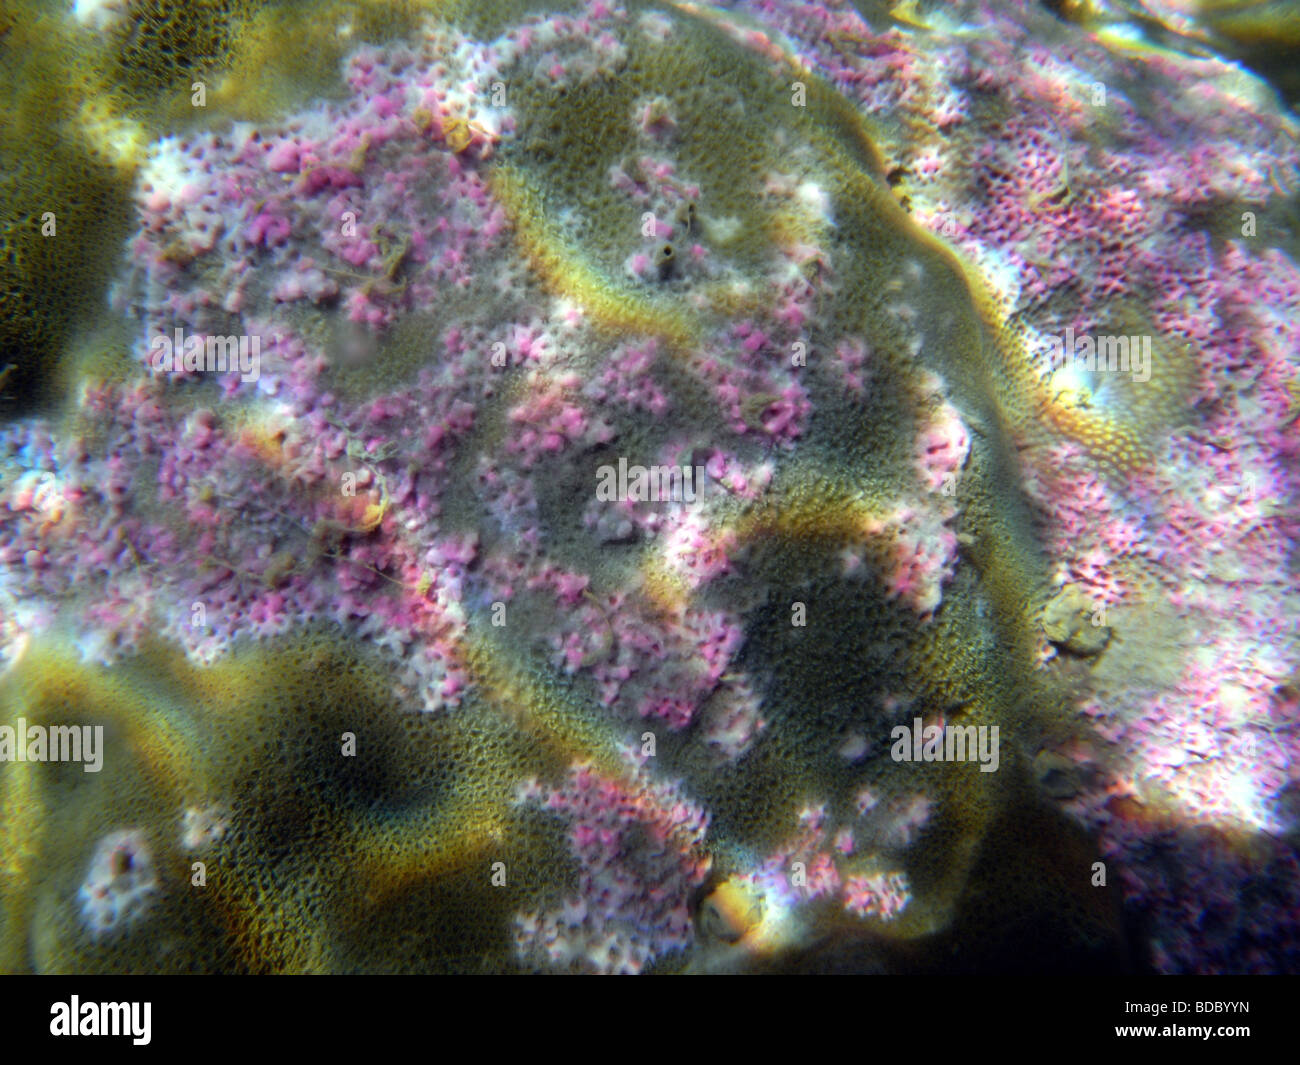 Colonie di corallo (Porites compressa) infettata da metacercariae del digenetic trematode Podocotyloides stenometra Foto Stock